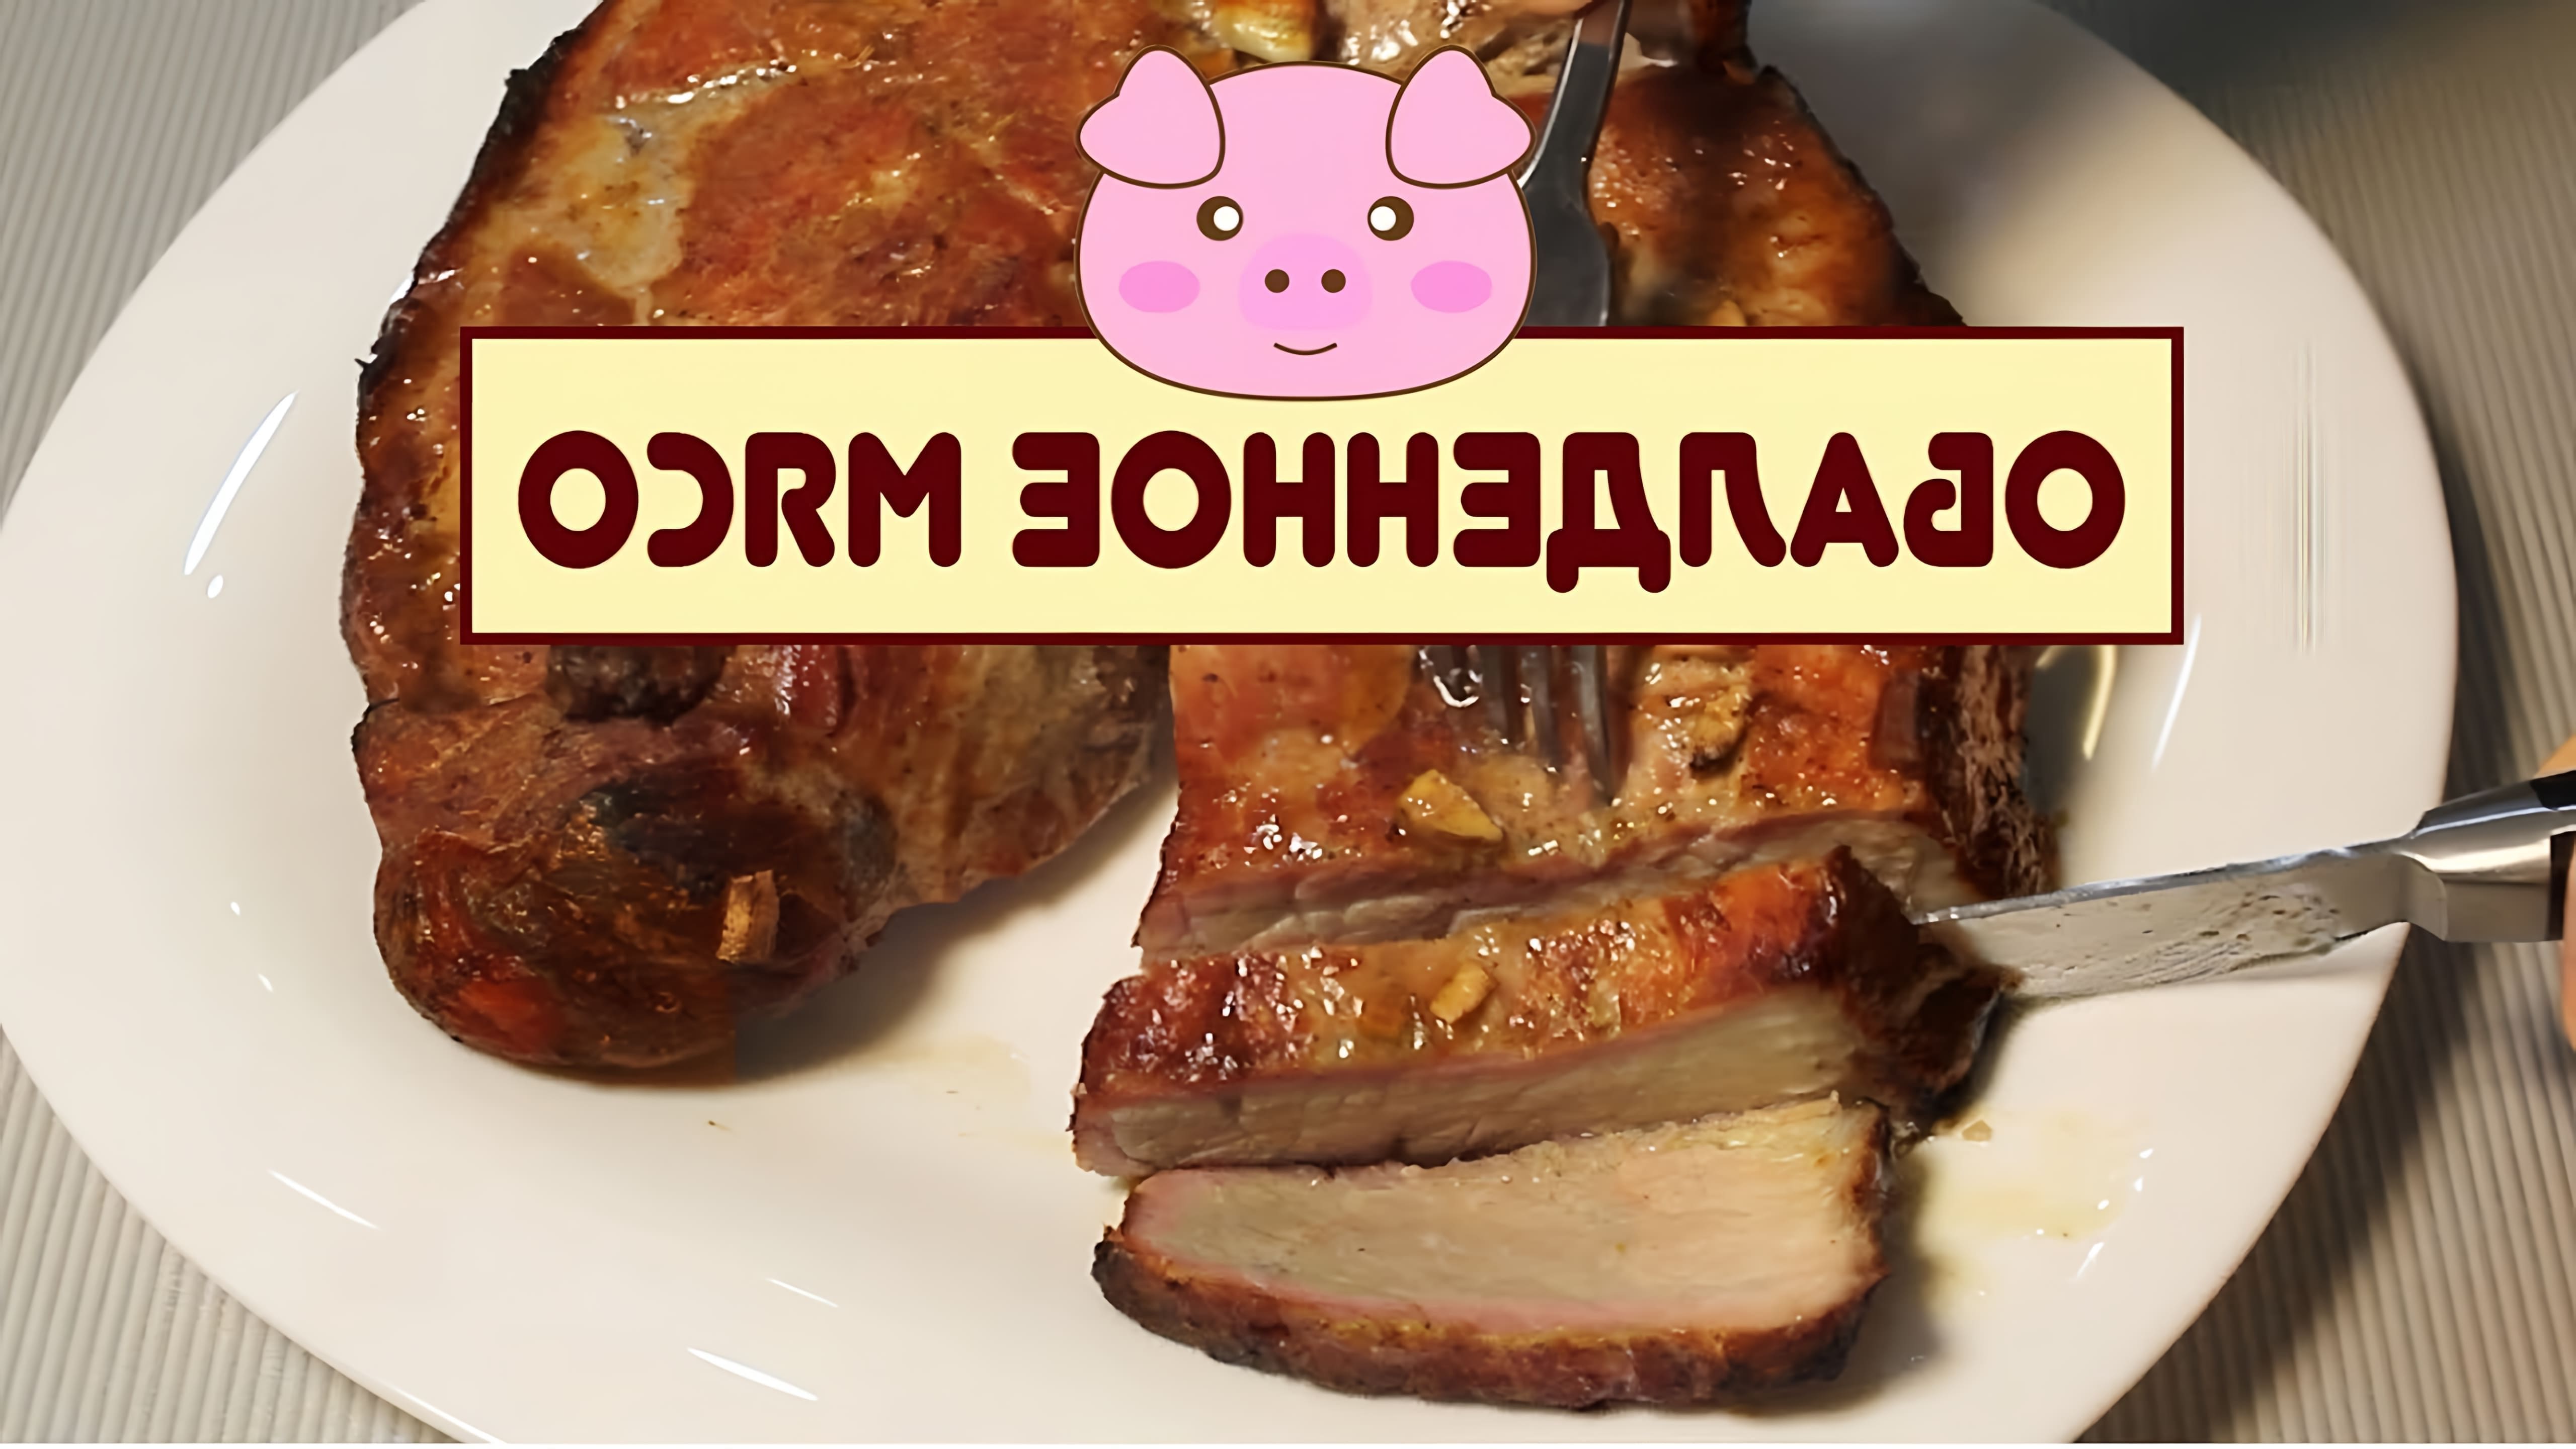 В этом видео-ролике будет показан простой и быстрый рецепт приготовления свиного окорока в духовке